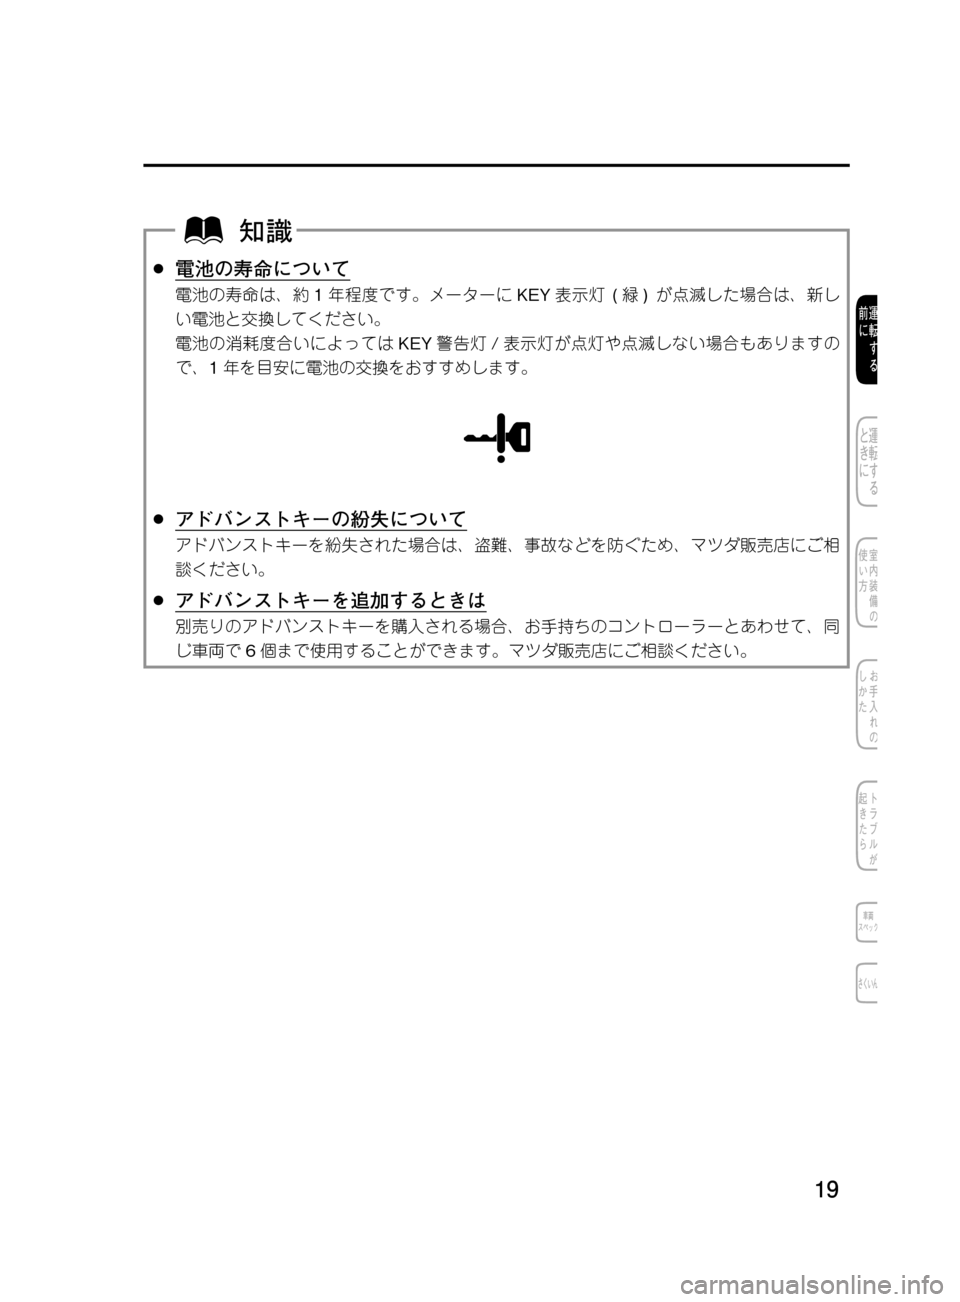 MAZDA MODEL DEMIO 2011  デミオ｜取扱説明書 (in Japanese) ��
��P�S�N��/�P���% 